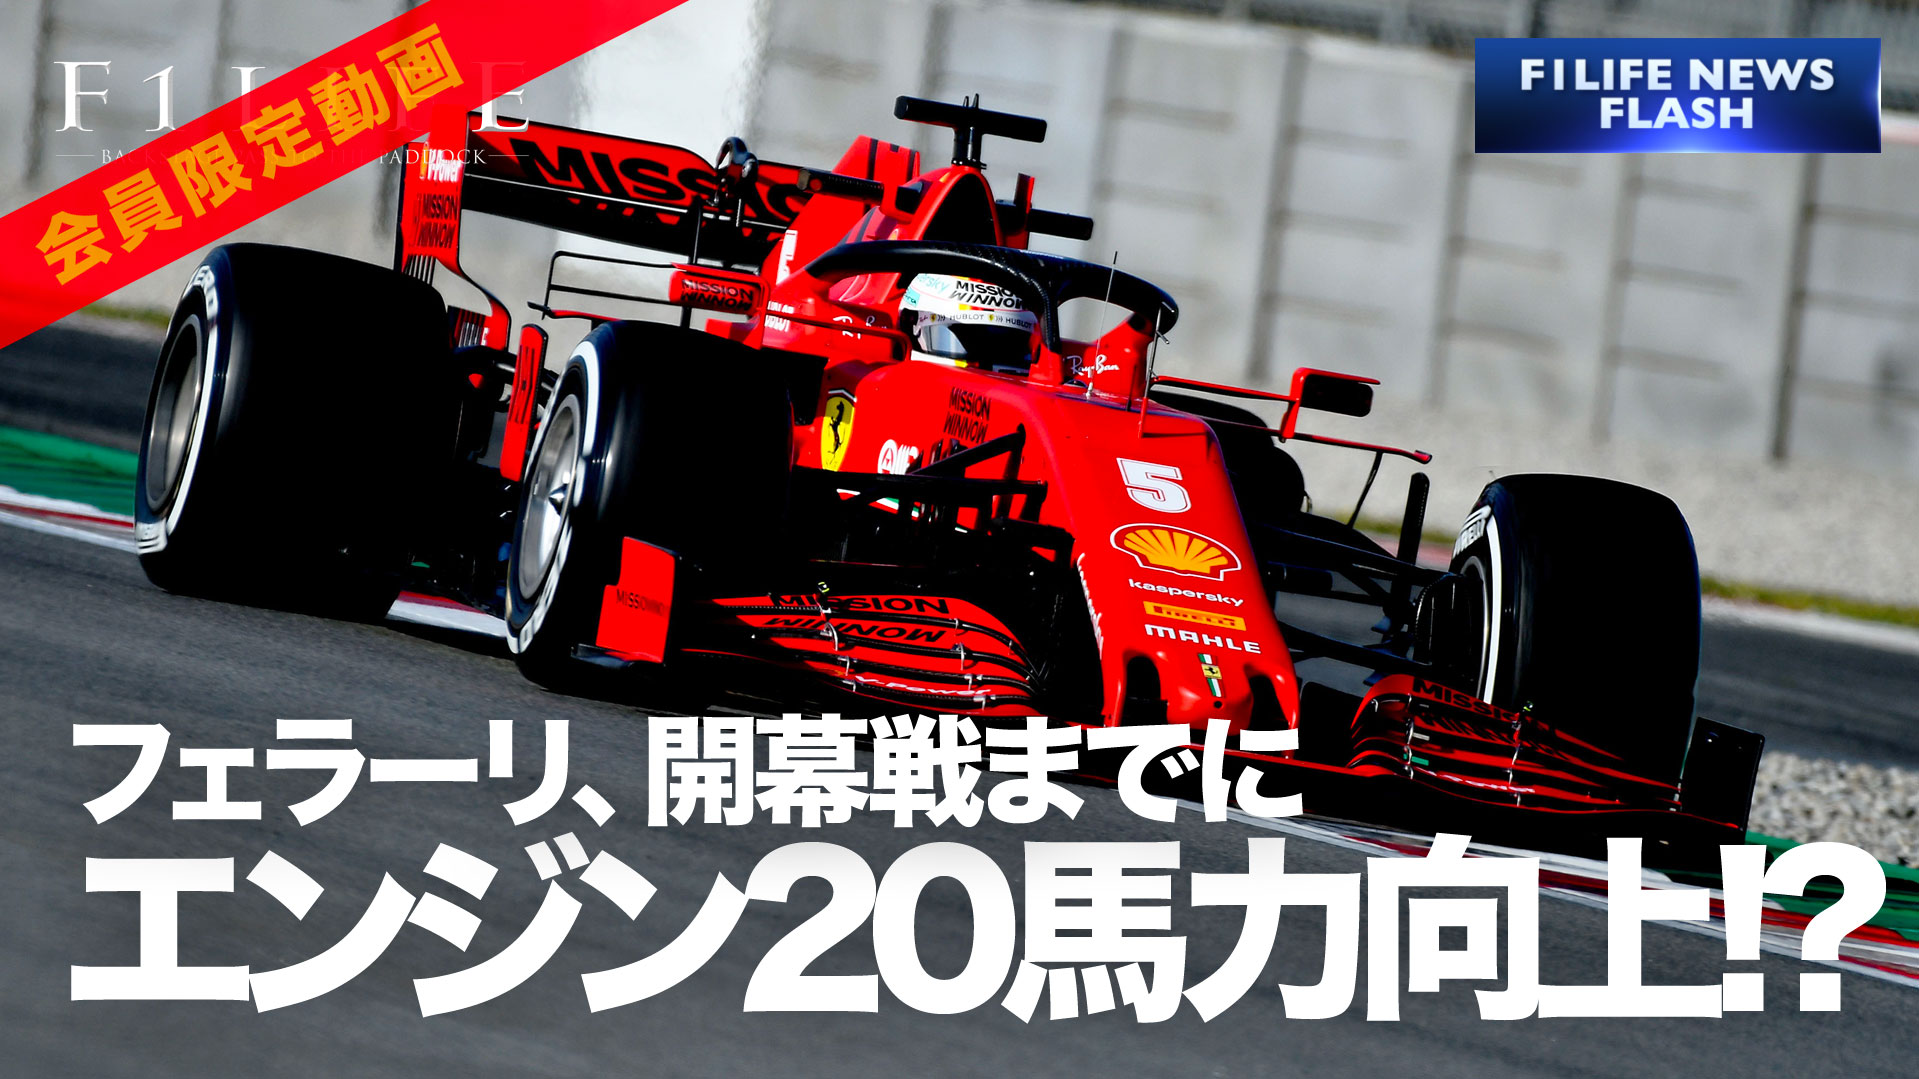 【F1LIFE channel】フェラーリ、20馬力アップのエンジン改良との報道【ｶﾞｾｯﾀ】